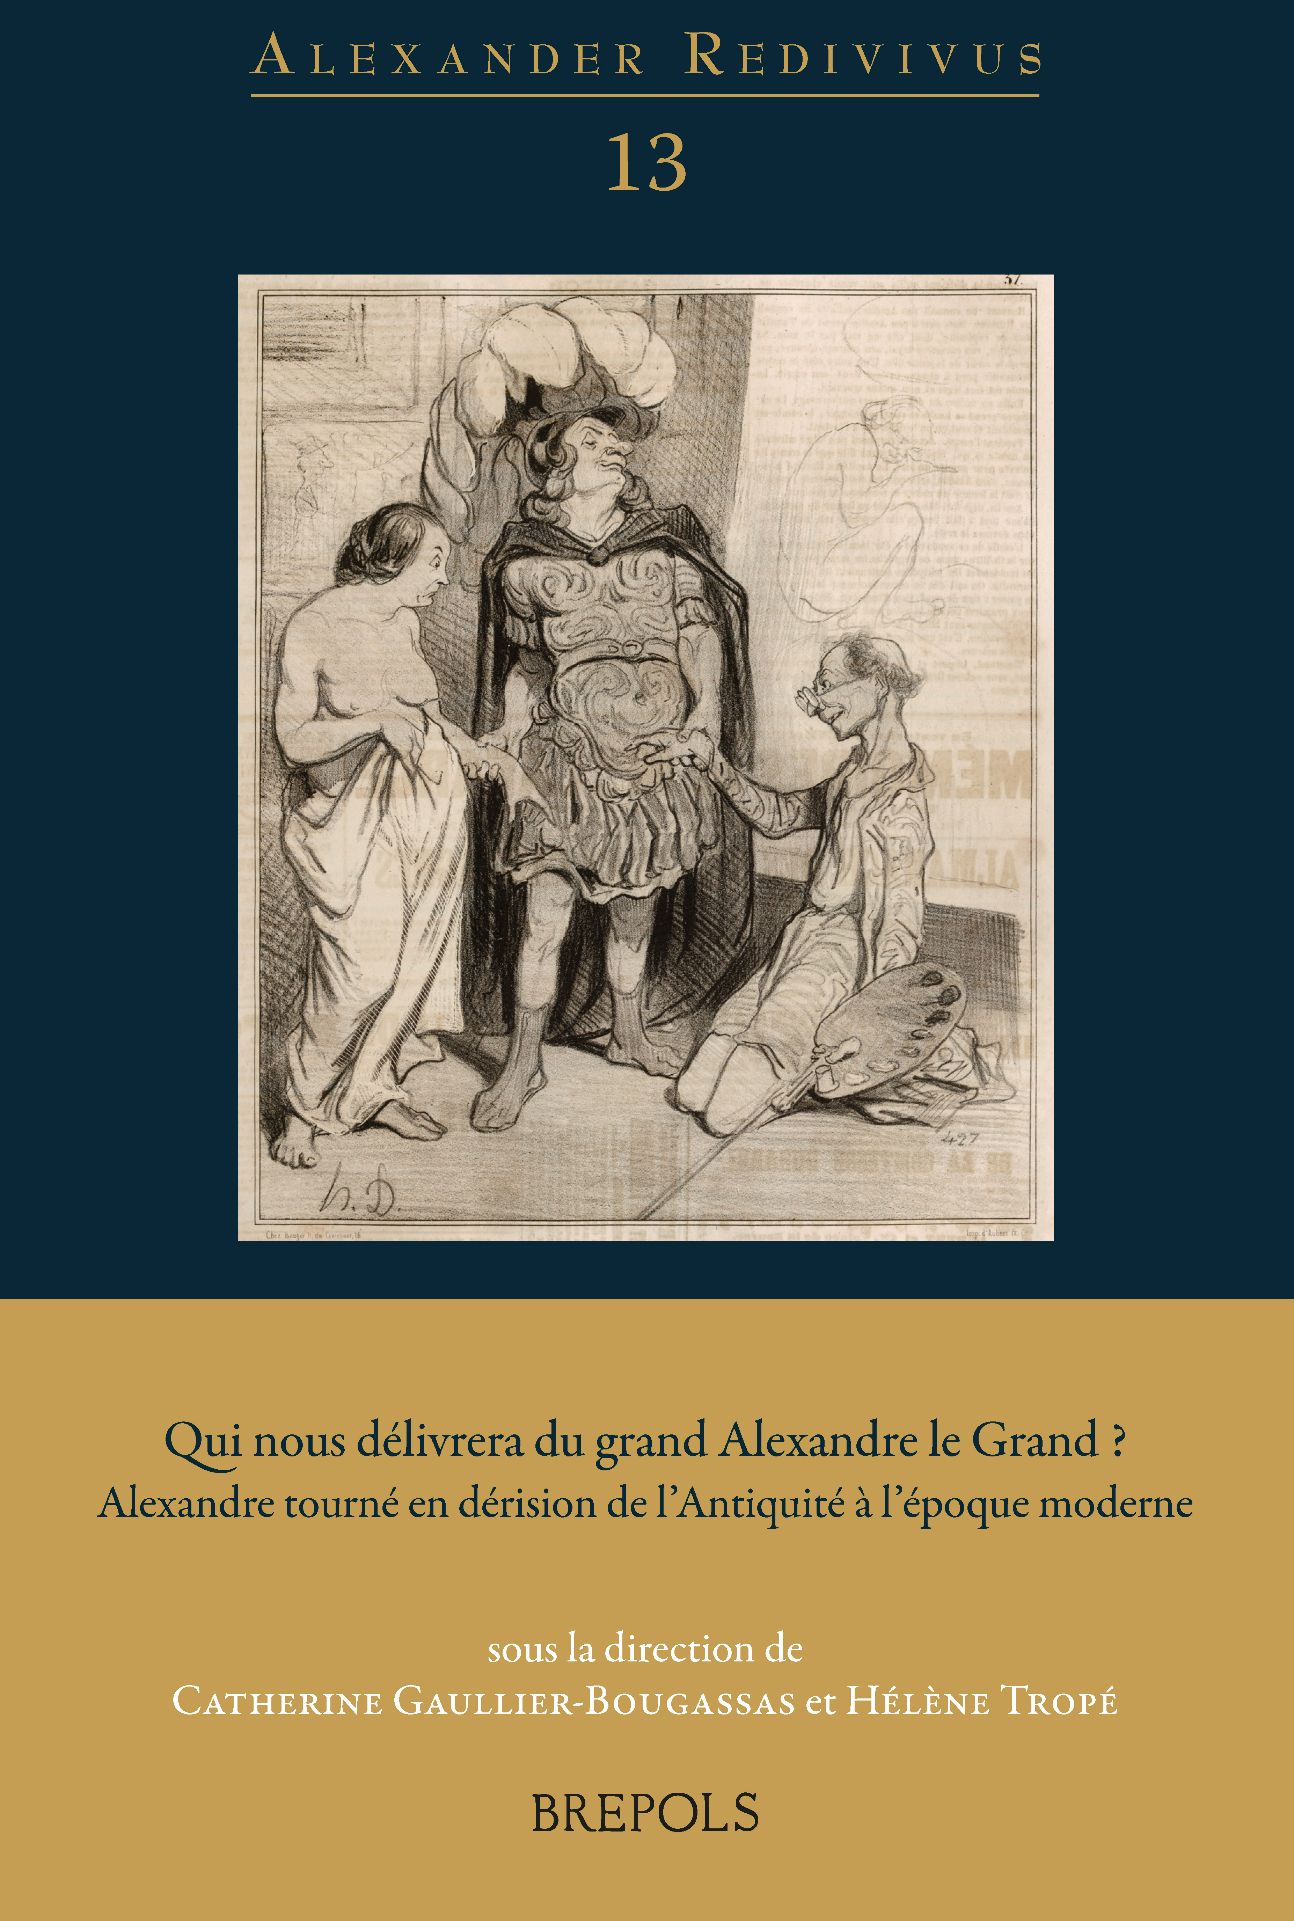 C. Gaullier-Bougassas, H. Tropé (dir.), Qui nous délivrera du grand Alexandre le Grand ?